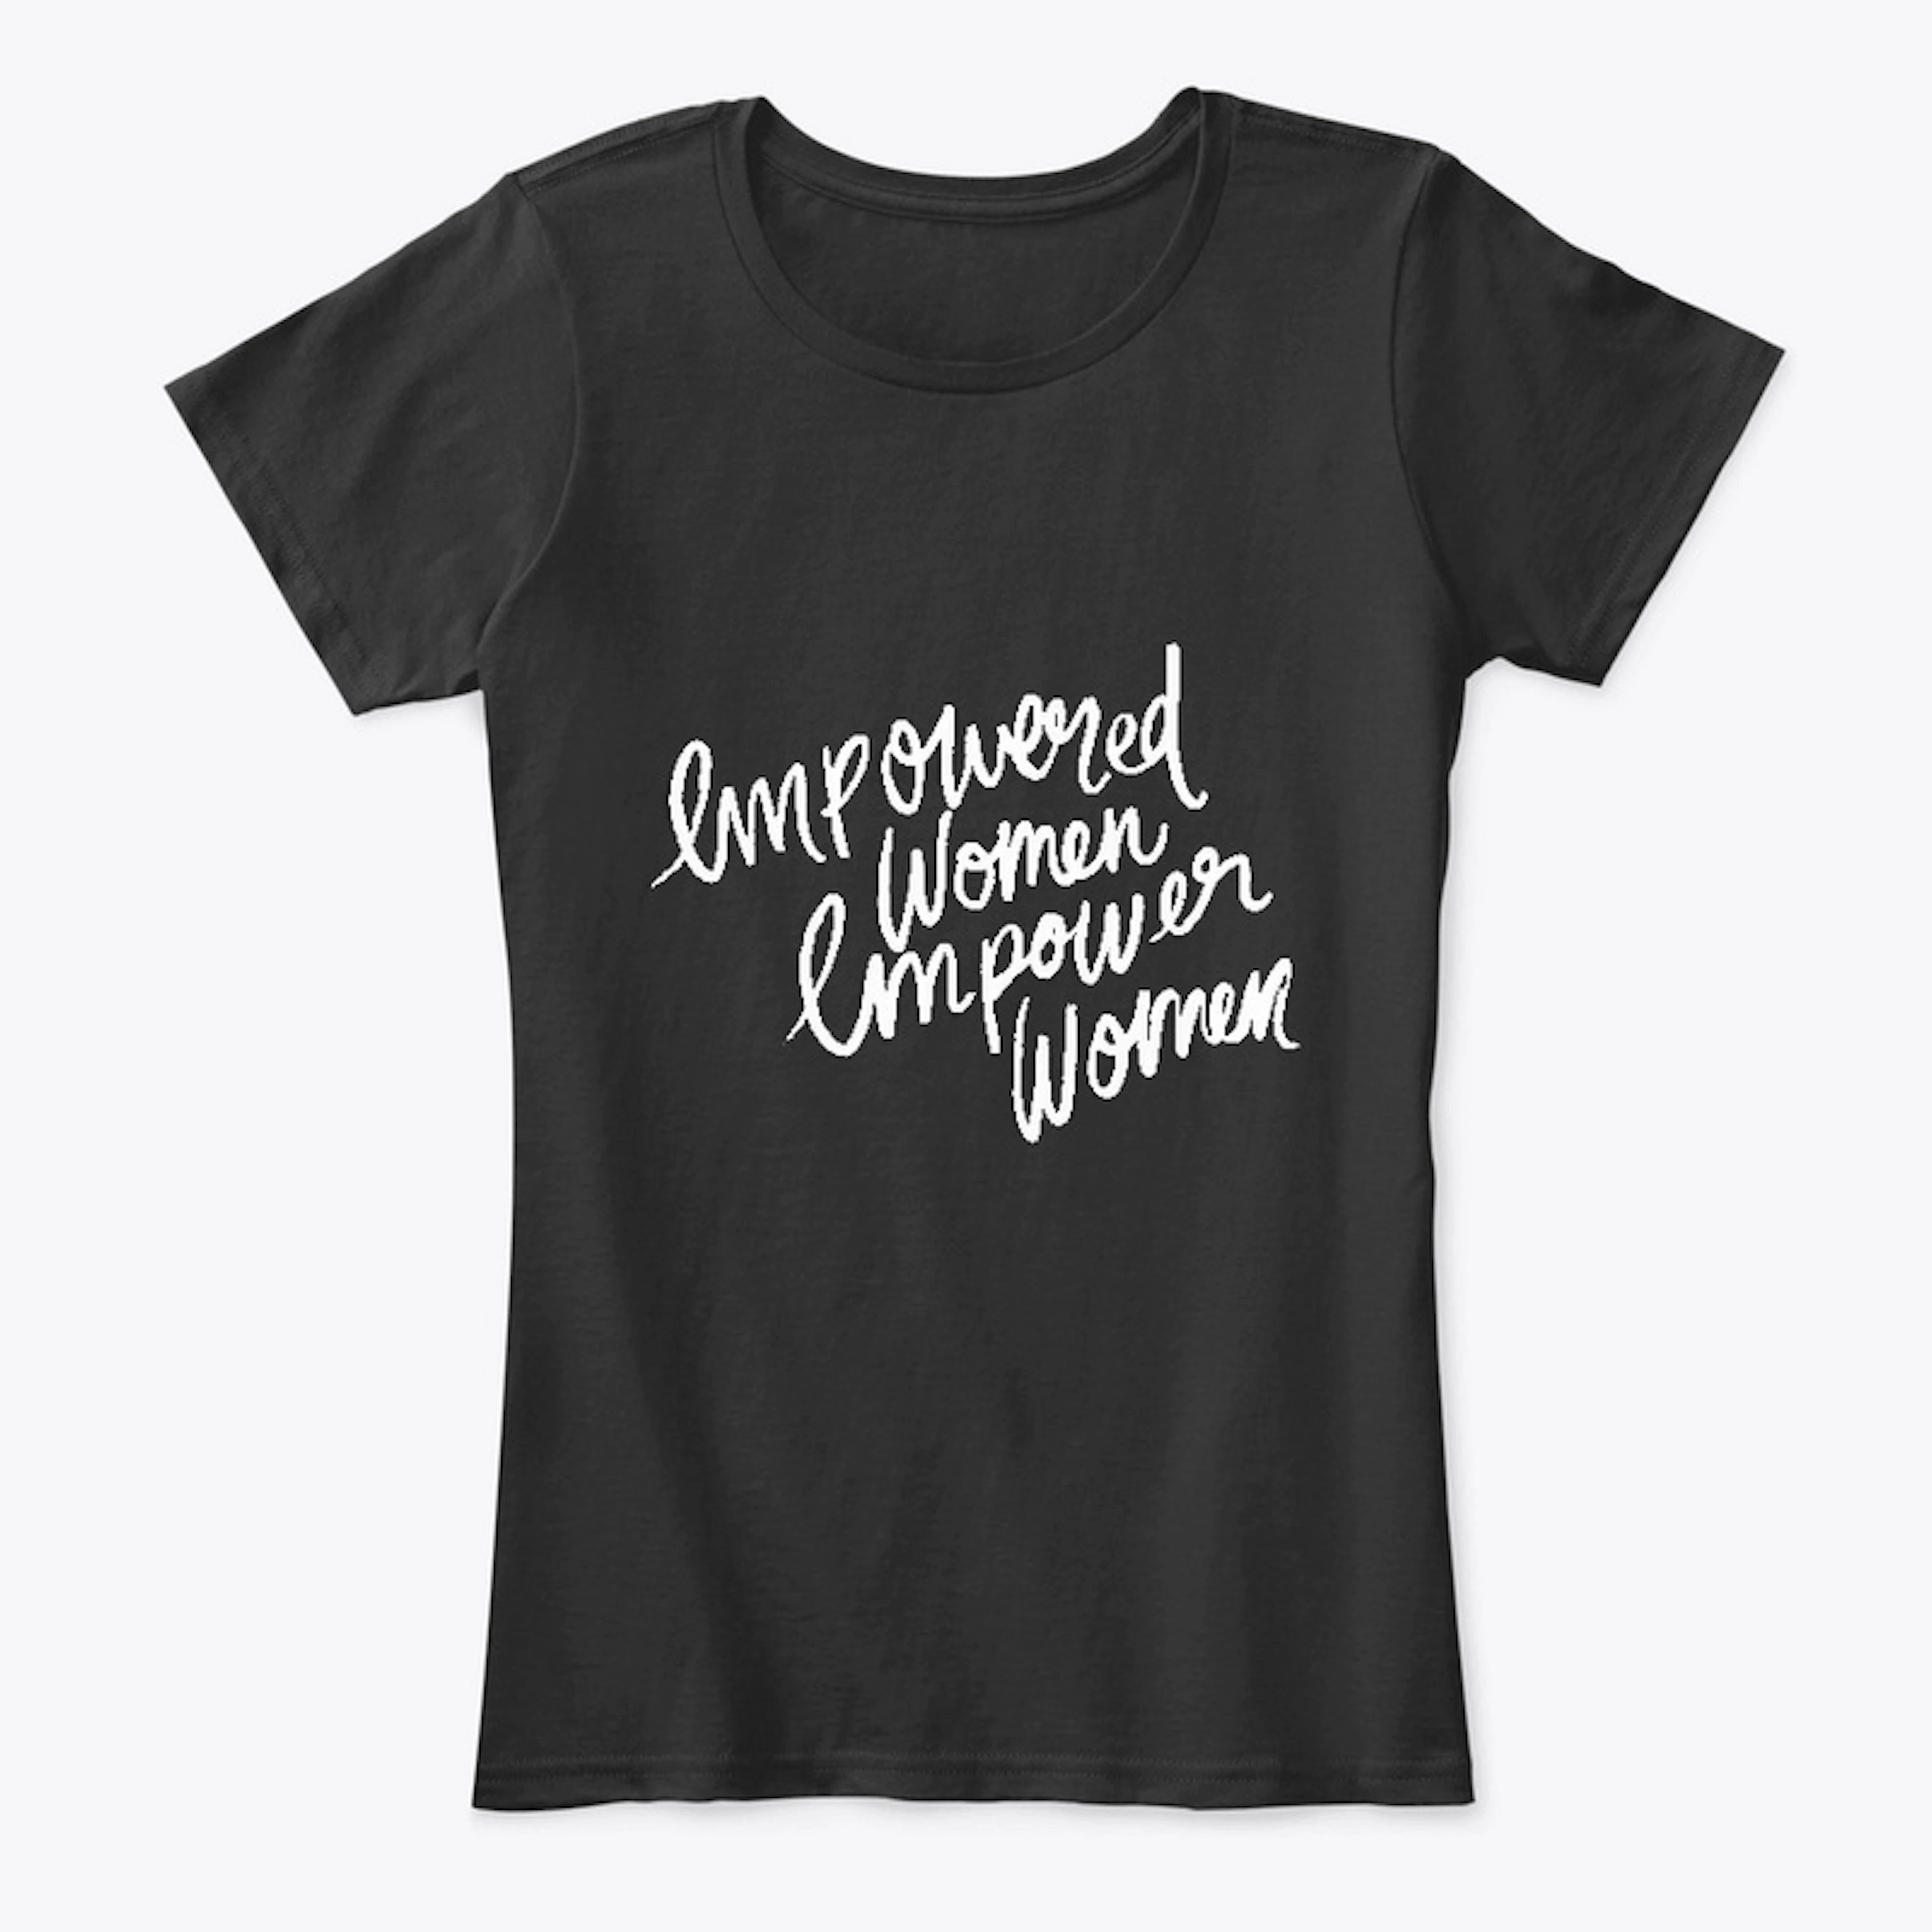 Empowered Women Empower Women black tee